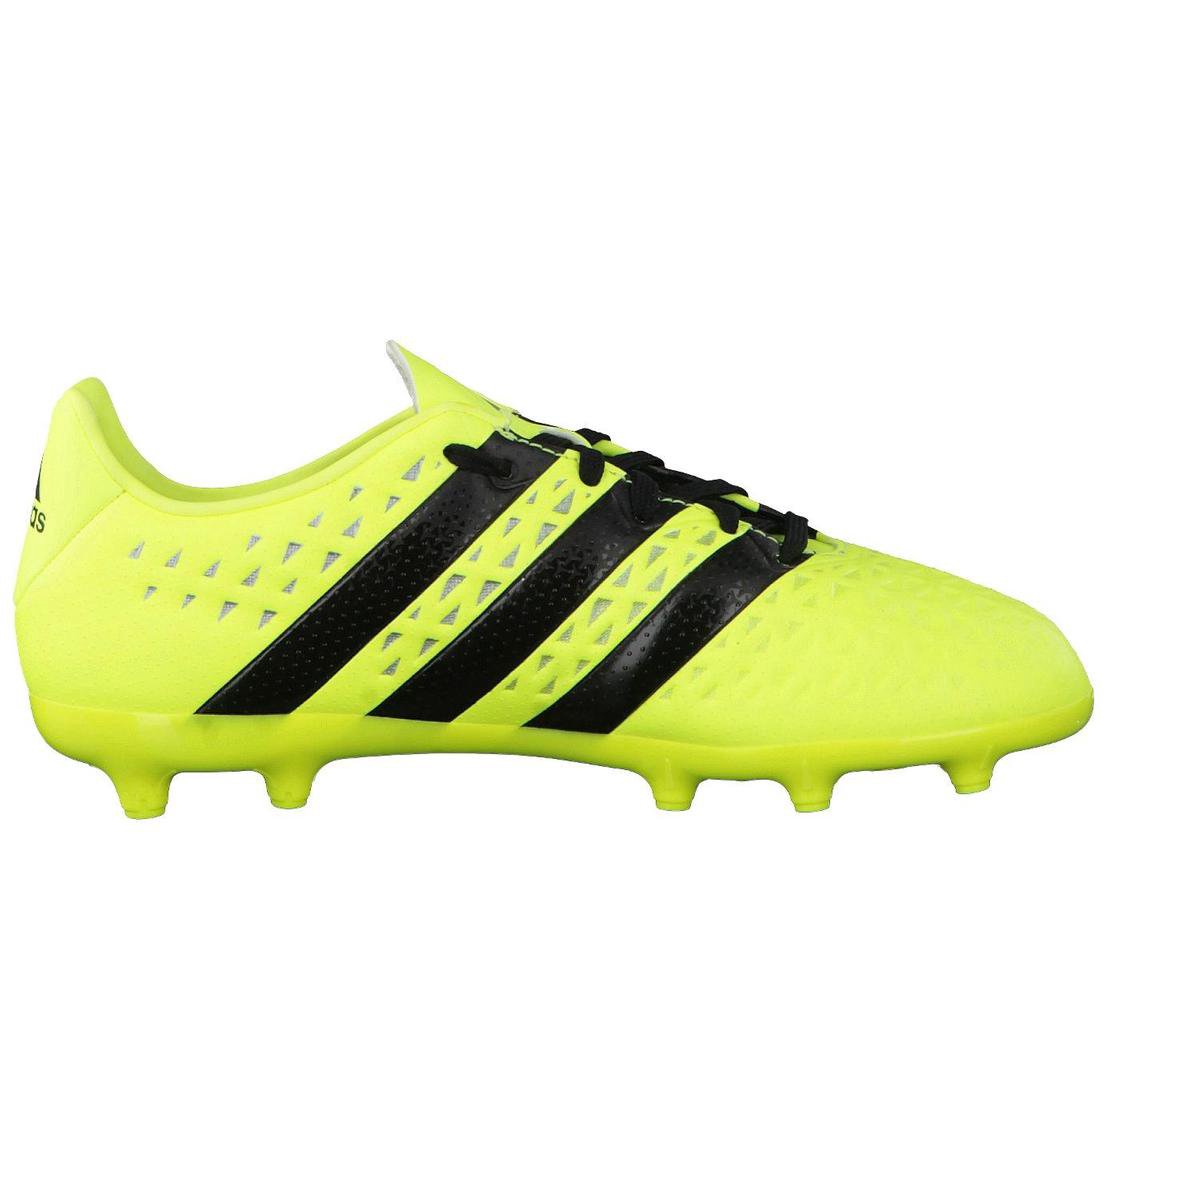 Adidas Ace 16.3 FG J geel voetbalschoenen kids | bol.com